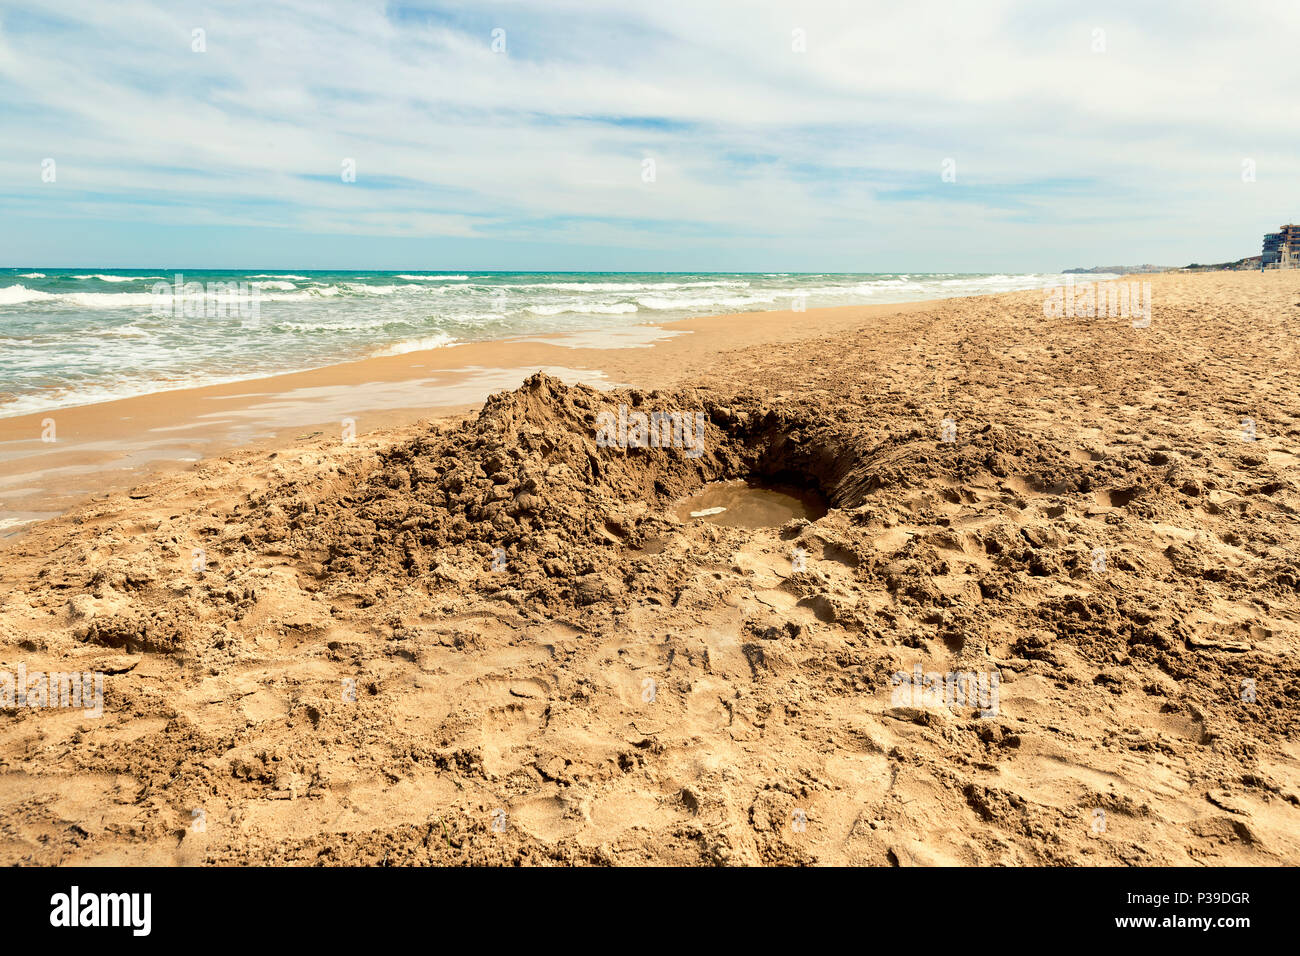 sea shore with hole excavated into the sand, guardamar del segura beach. Alicante. Spain Stock Photo